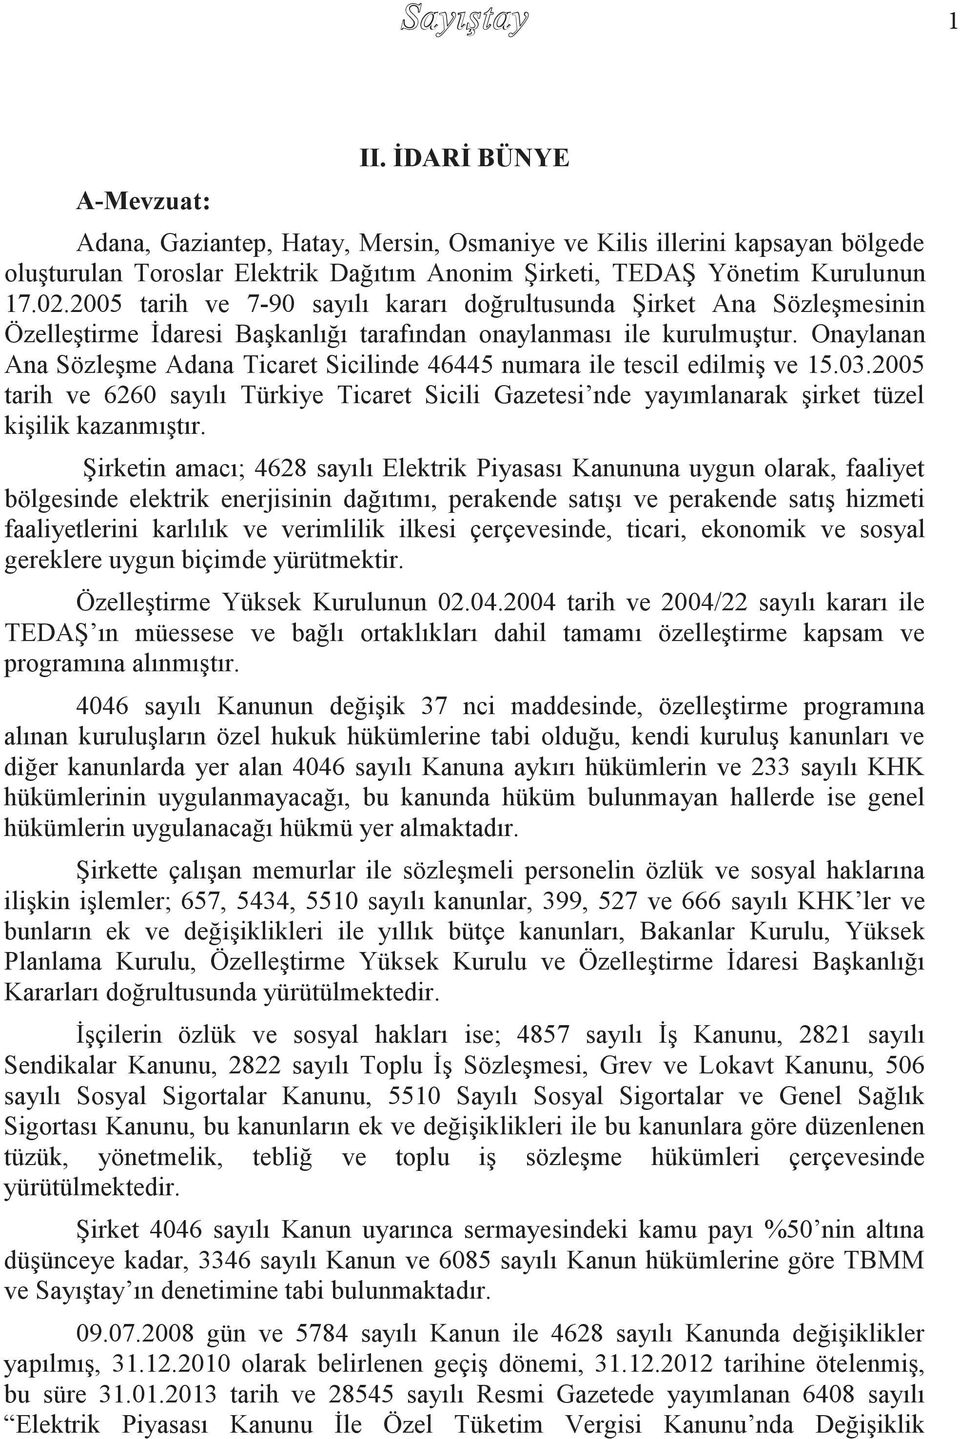 Onaylanan Ana Sözleşme Adana Ticaret Sicilinde 46445 numara ile tescil edilmiş ve 15.03.2005 tarih ve 6260 sayılı Türkiye Ticaret Sicili Gazetesi nde yayımlanarak şirket tüzel kişilik kazanmıştır.